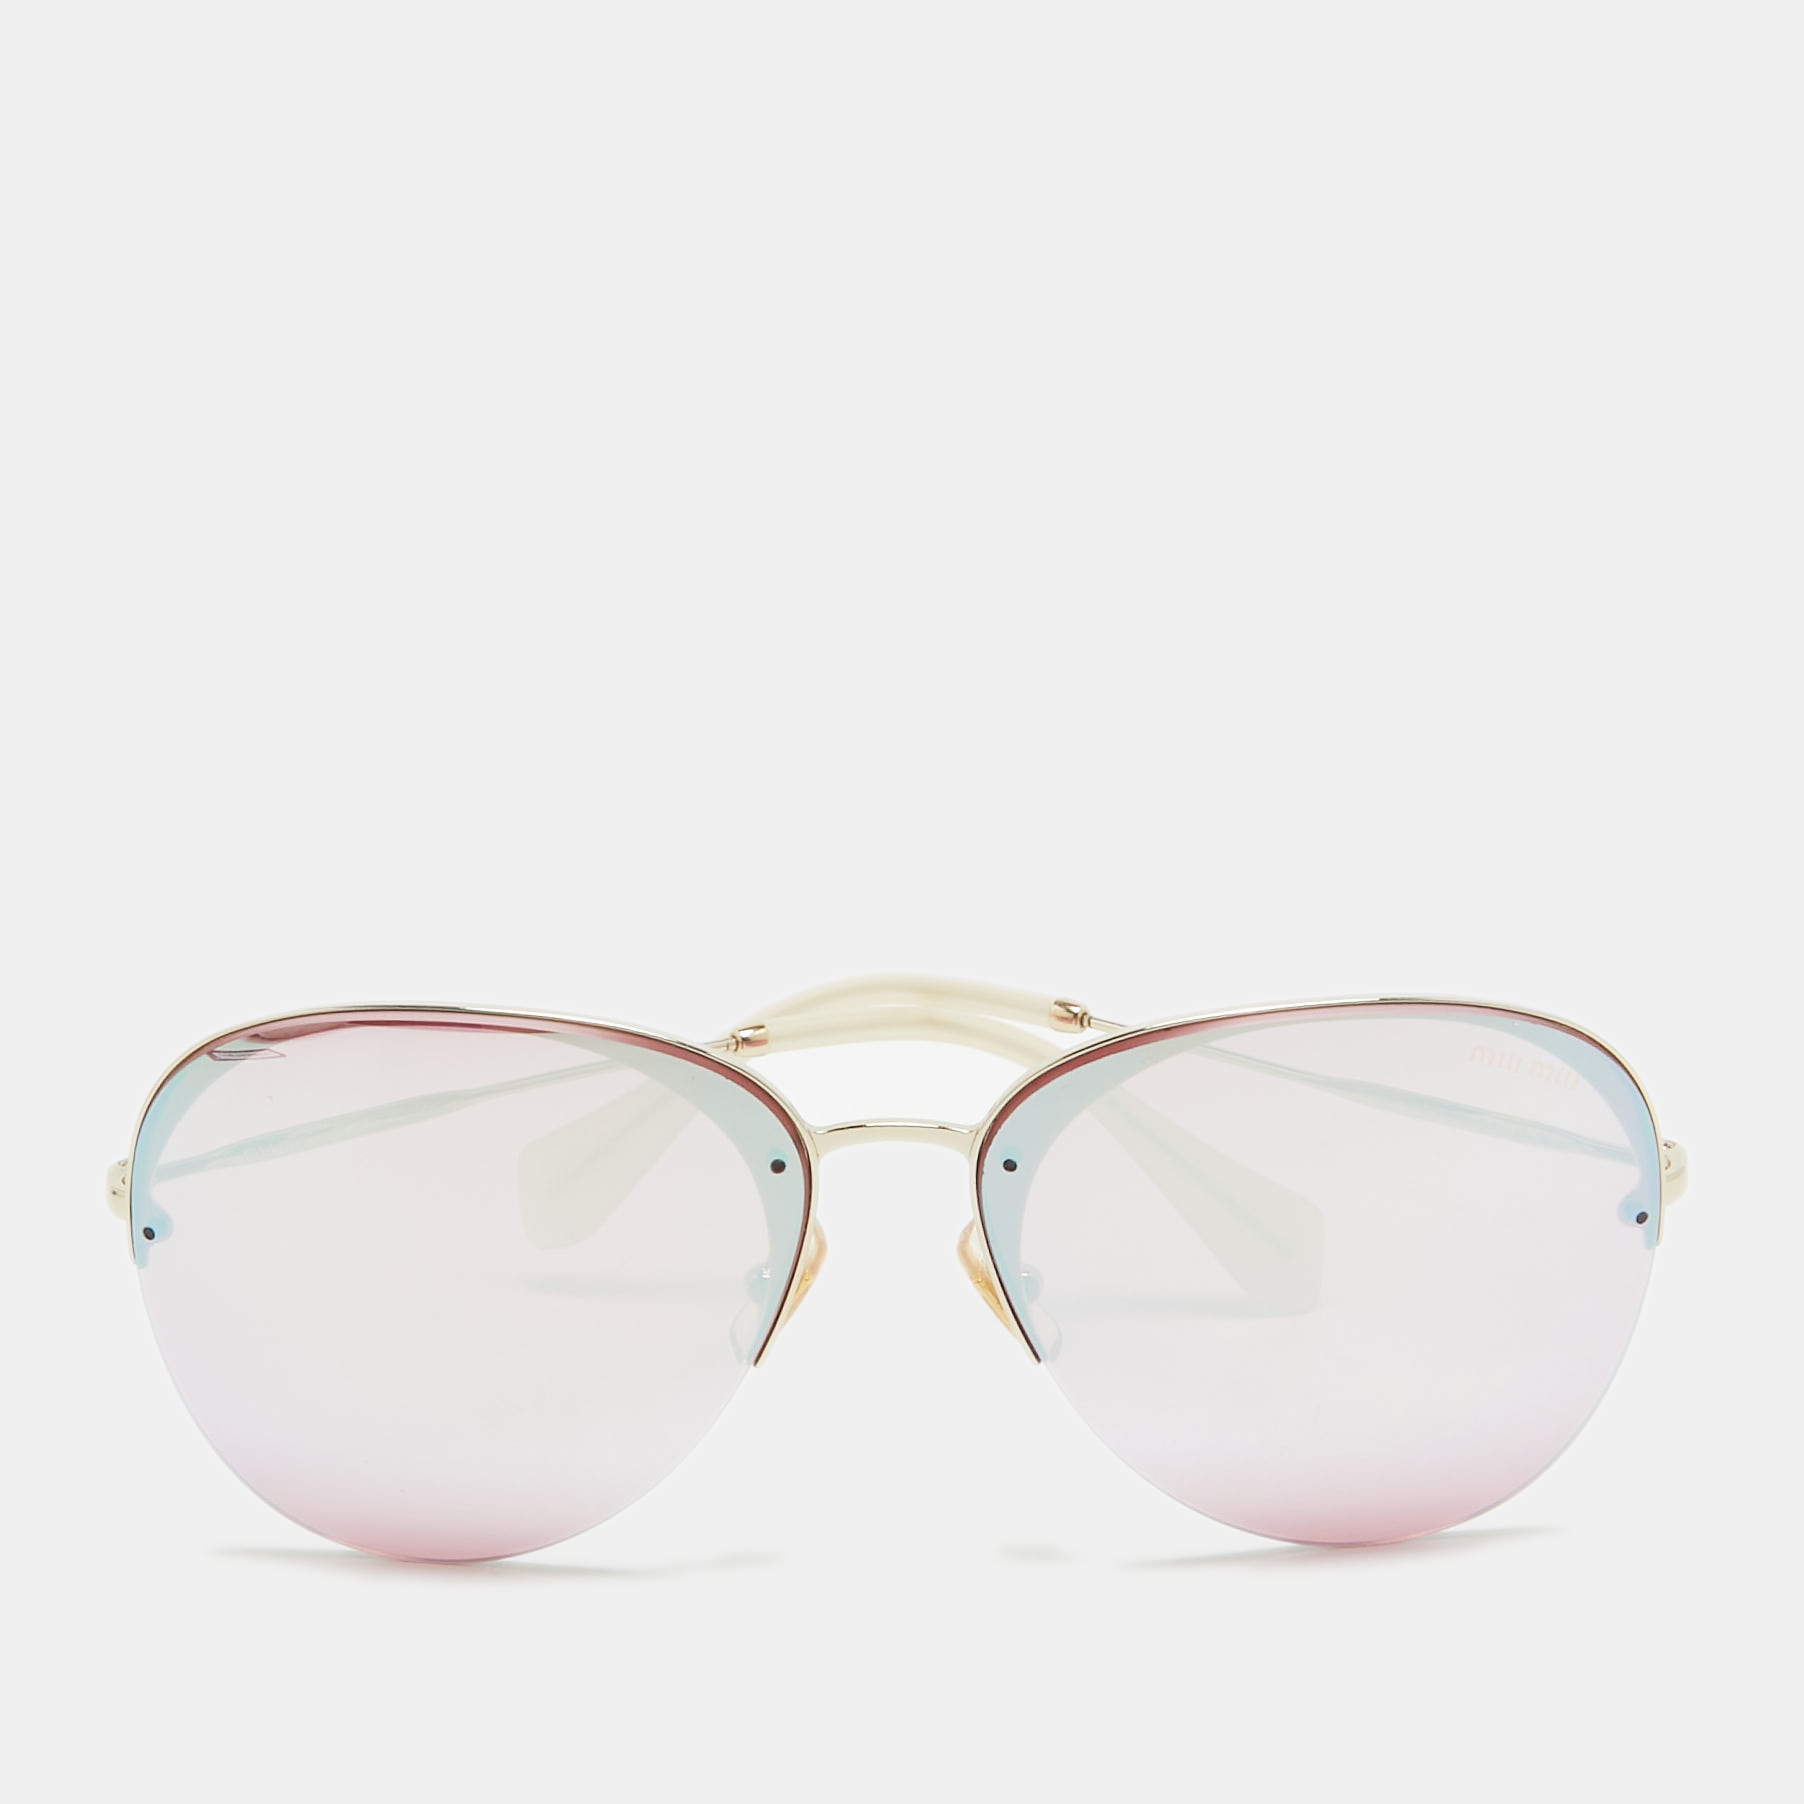 Miu miu pink/gold mirrored smu53p aviator sunglasses